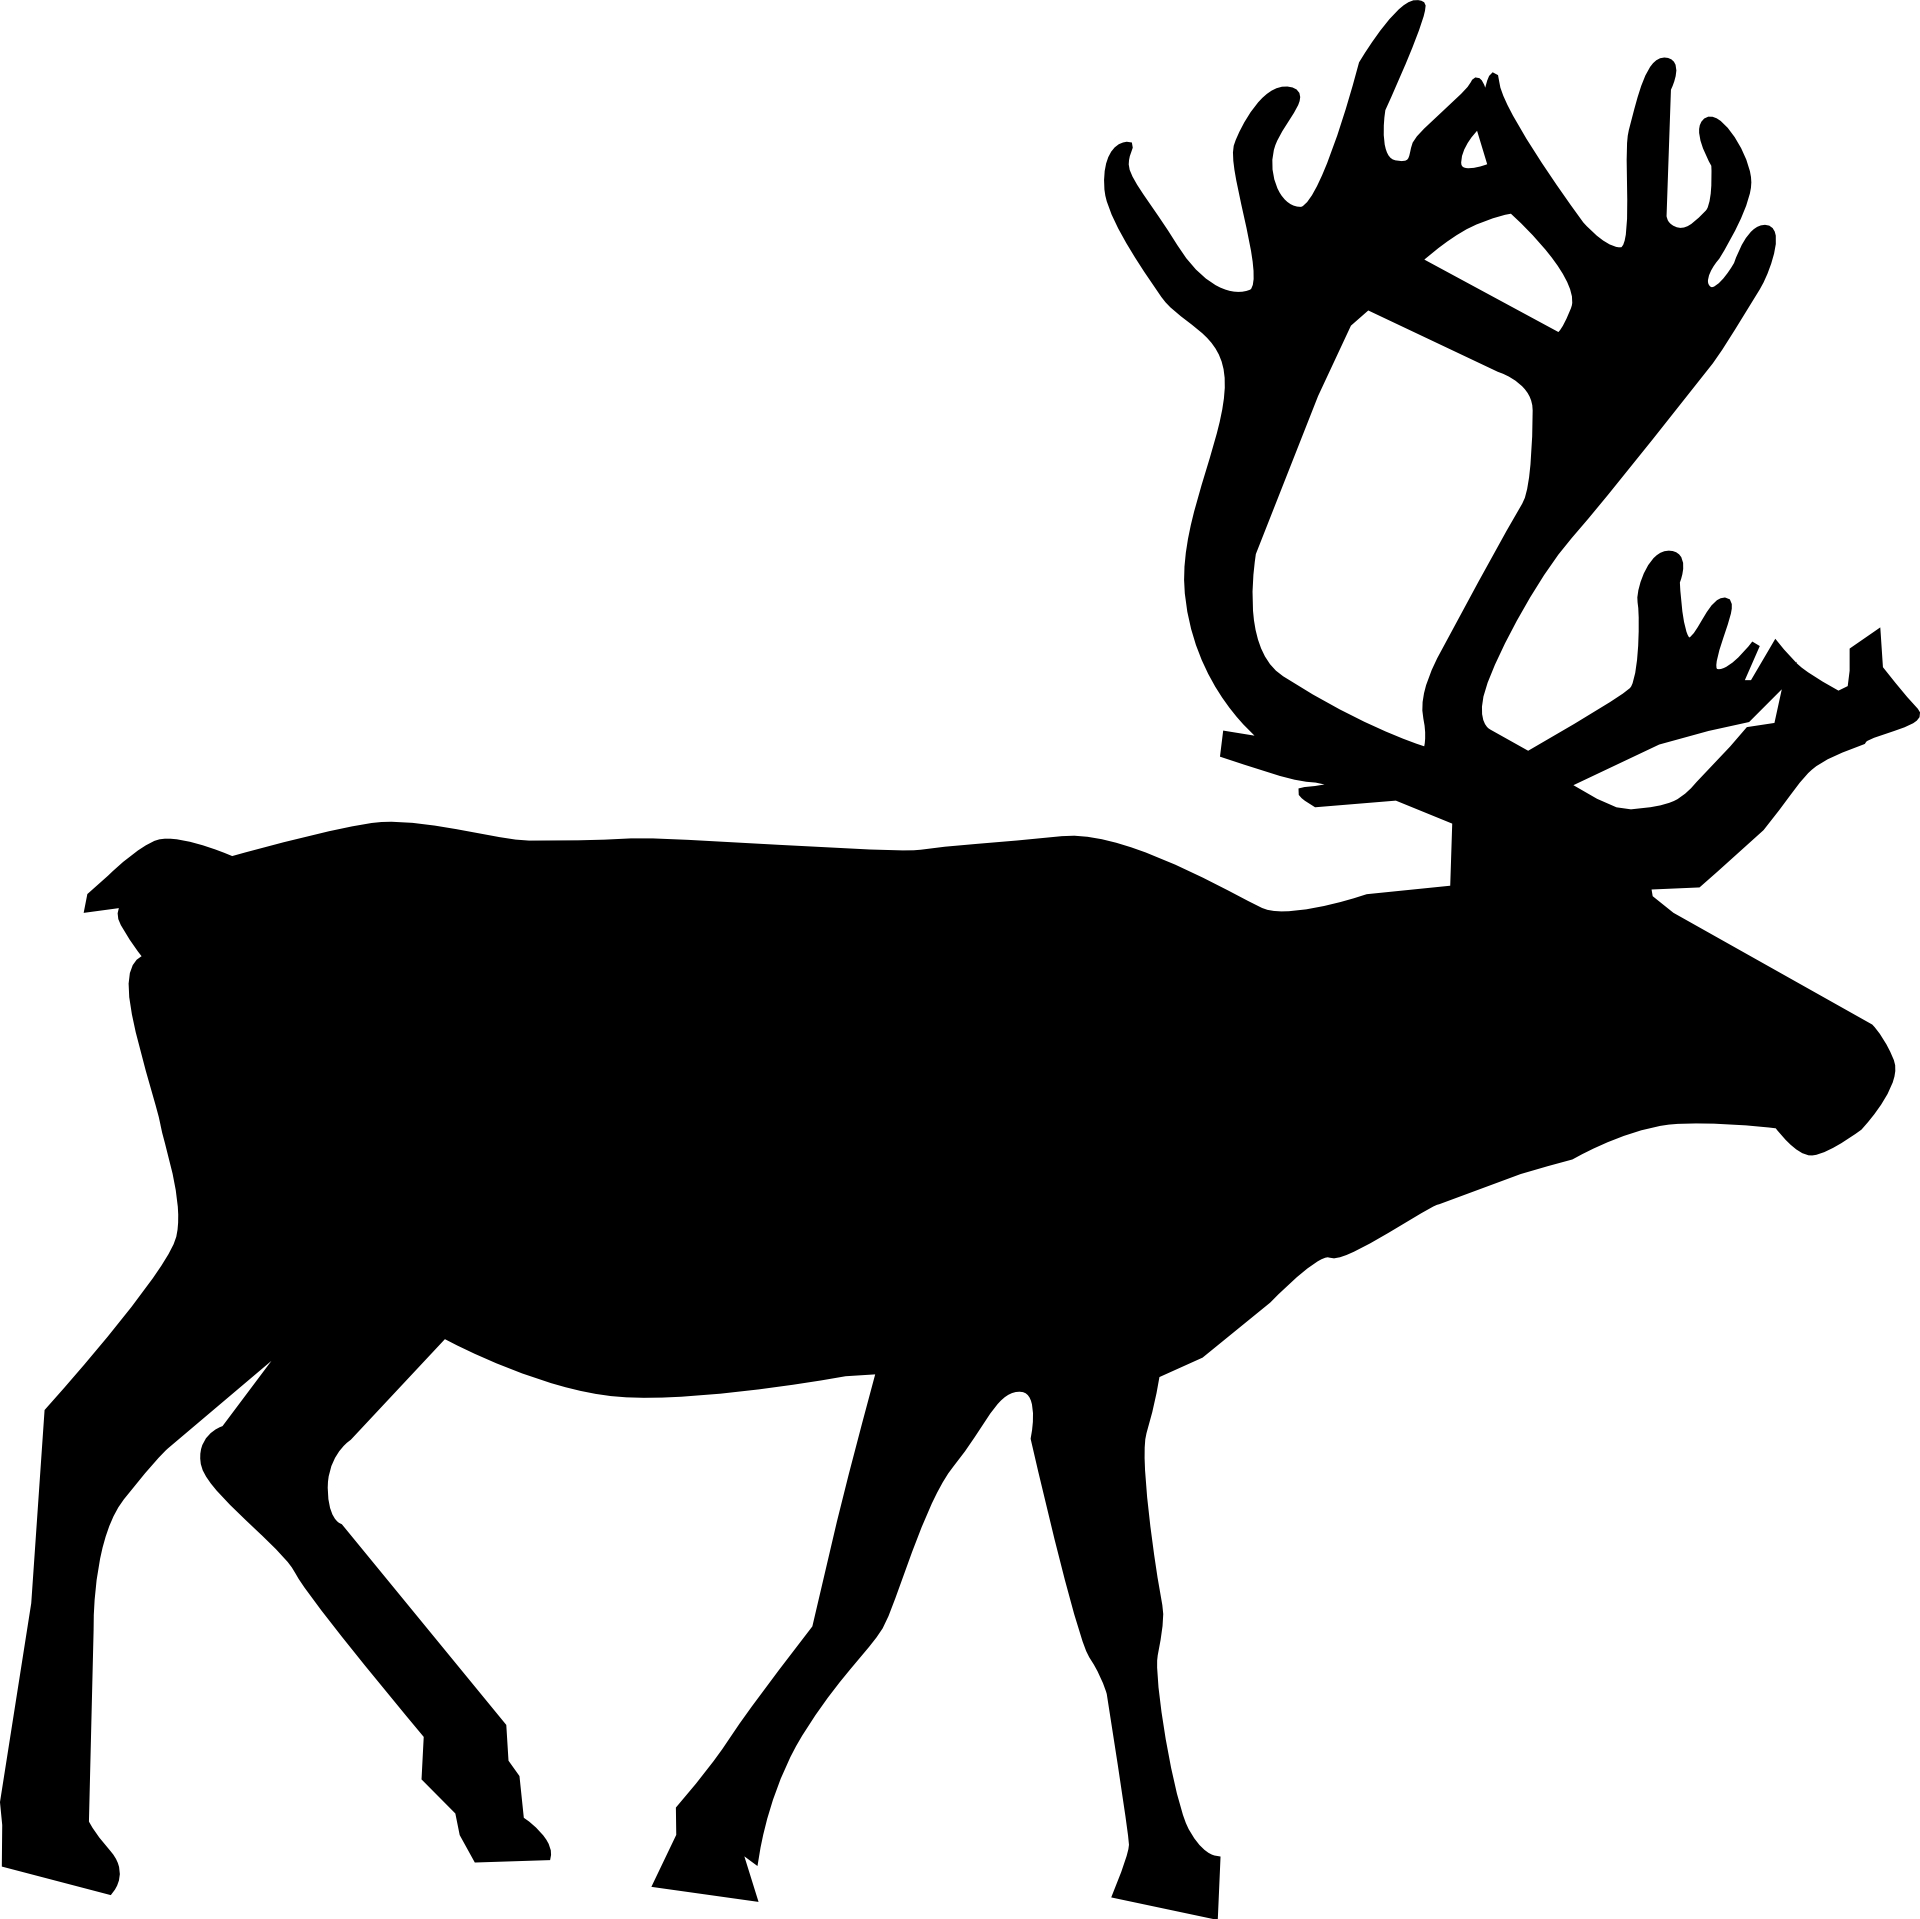 Animal silhouette,reindeer vector